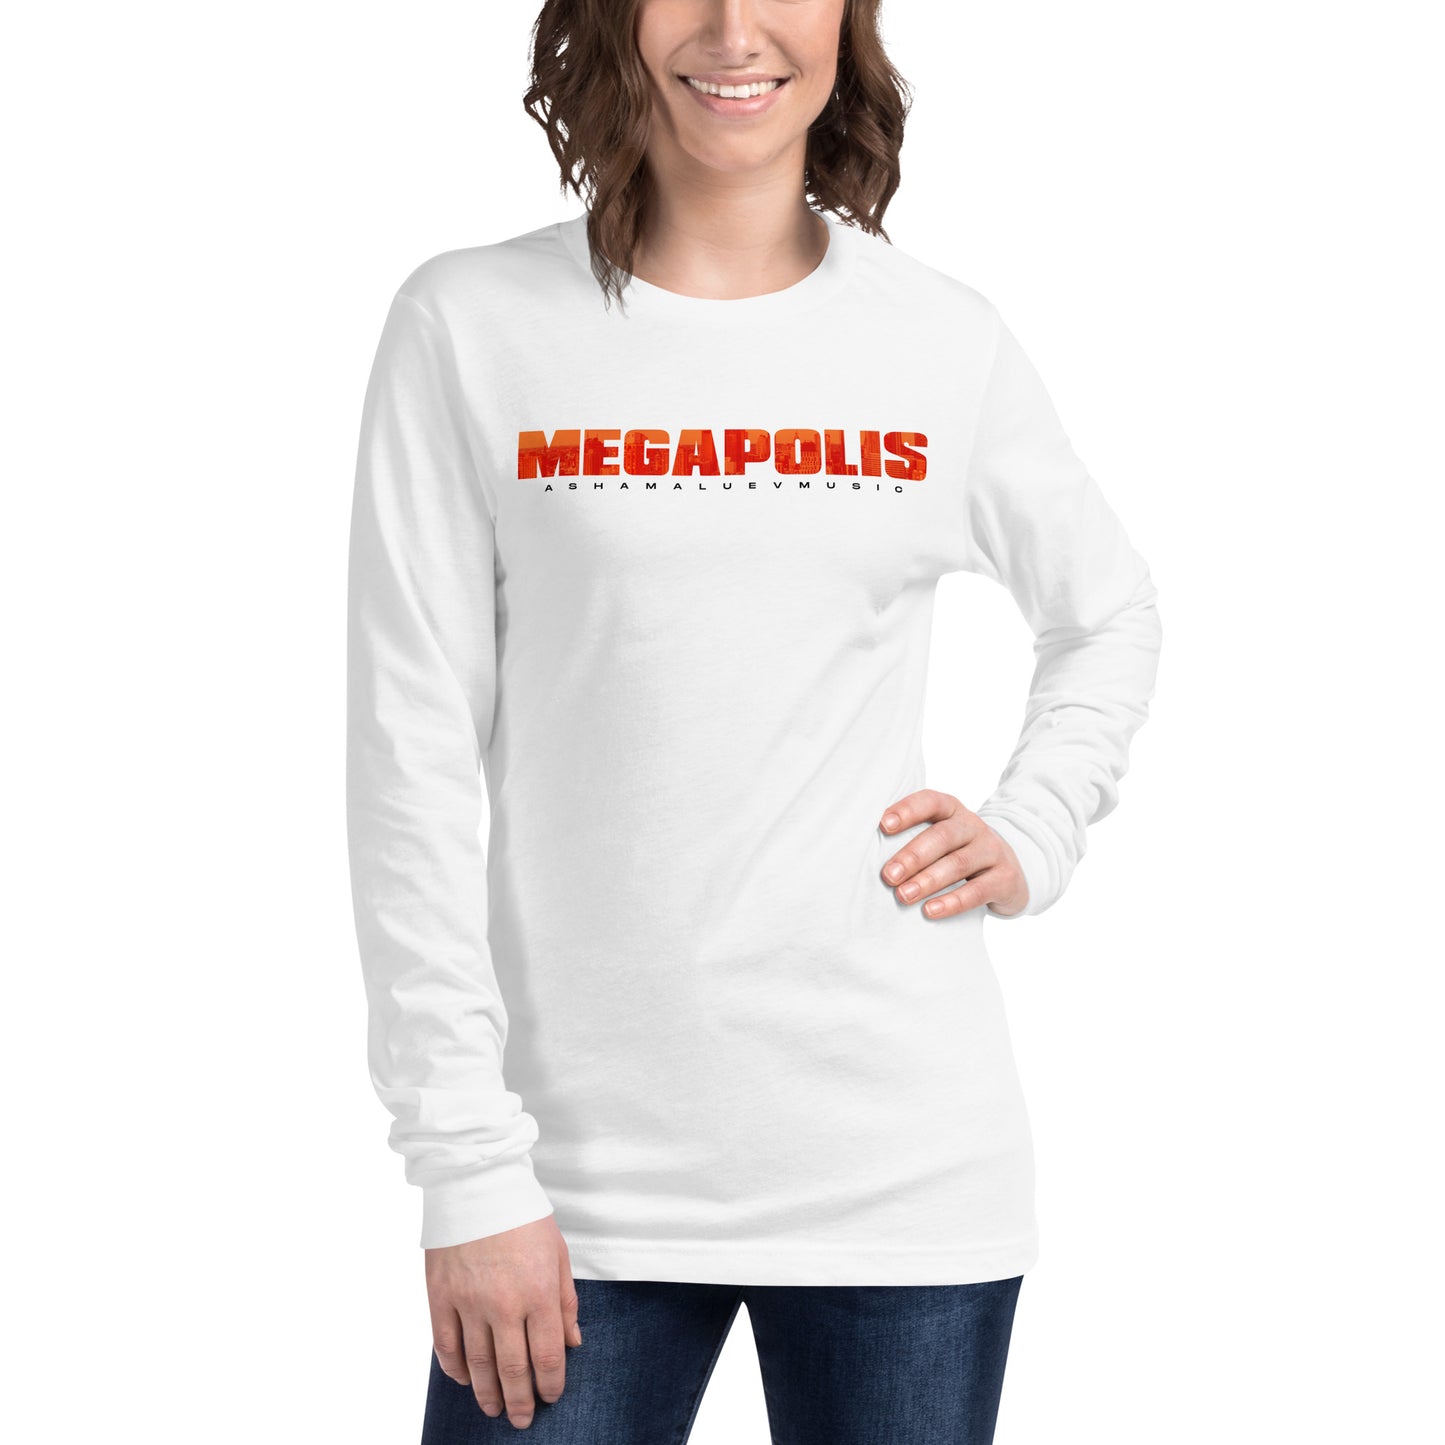 Long Sleeve T-Shirt "Megapolis" II